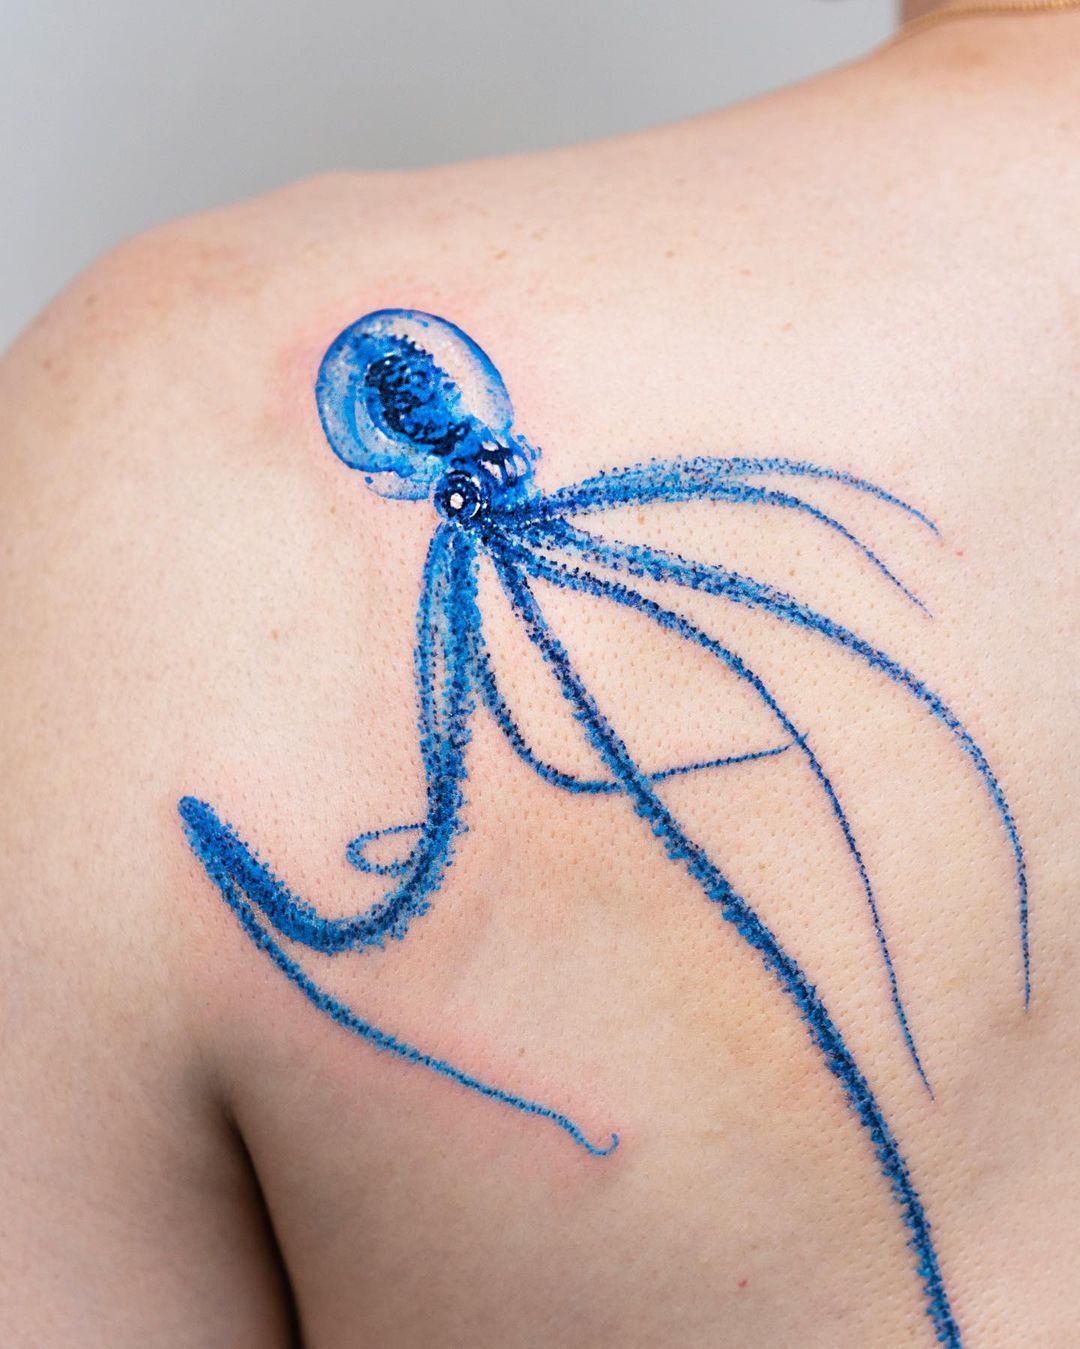 Tatuaje de pulpo largo y azul